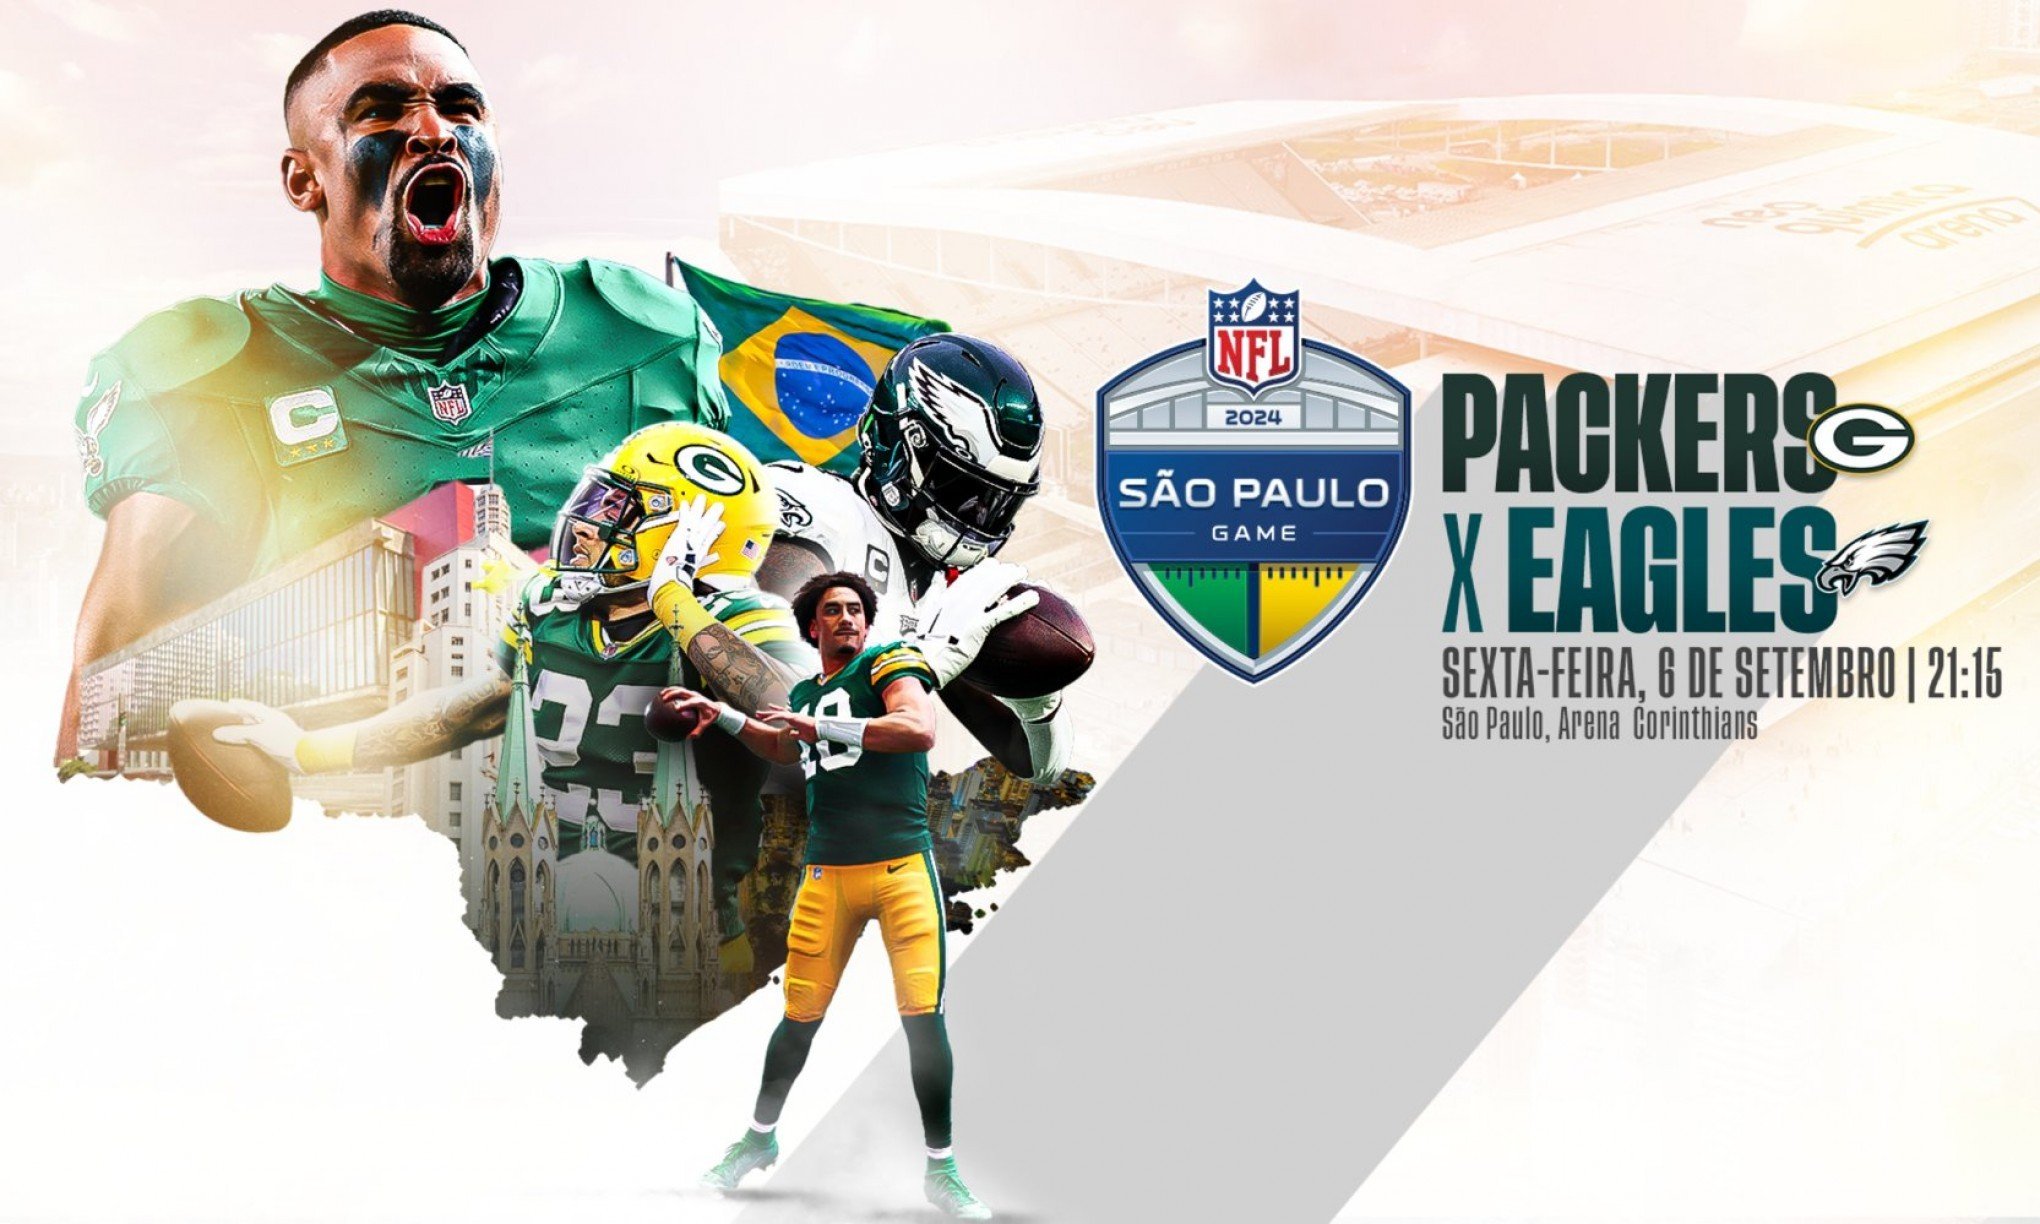 Venda de ingressos para jogo da NFL no Brasil abre para todo o público